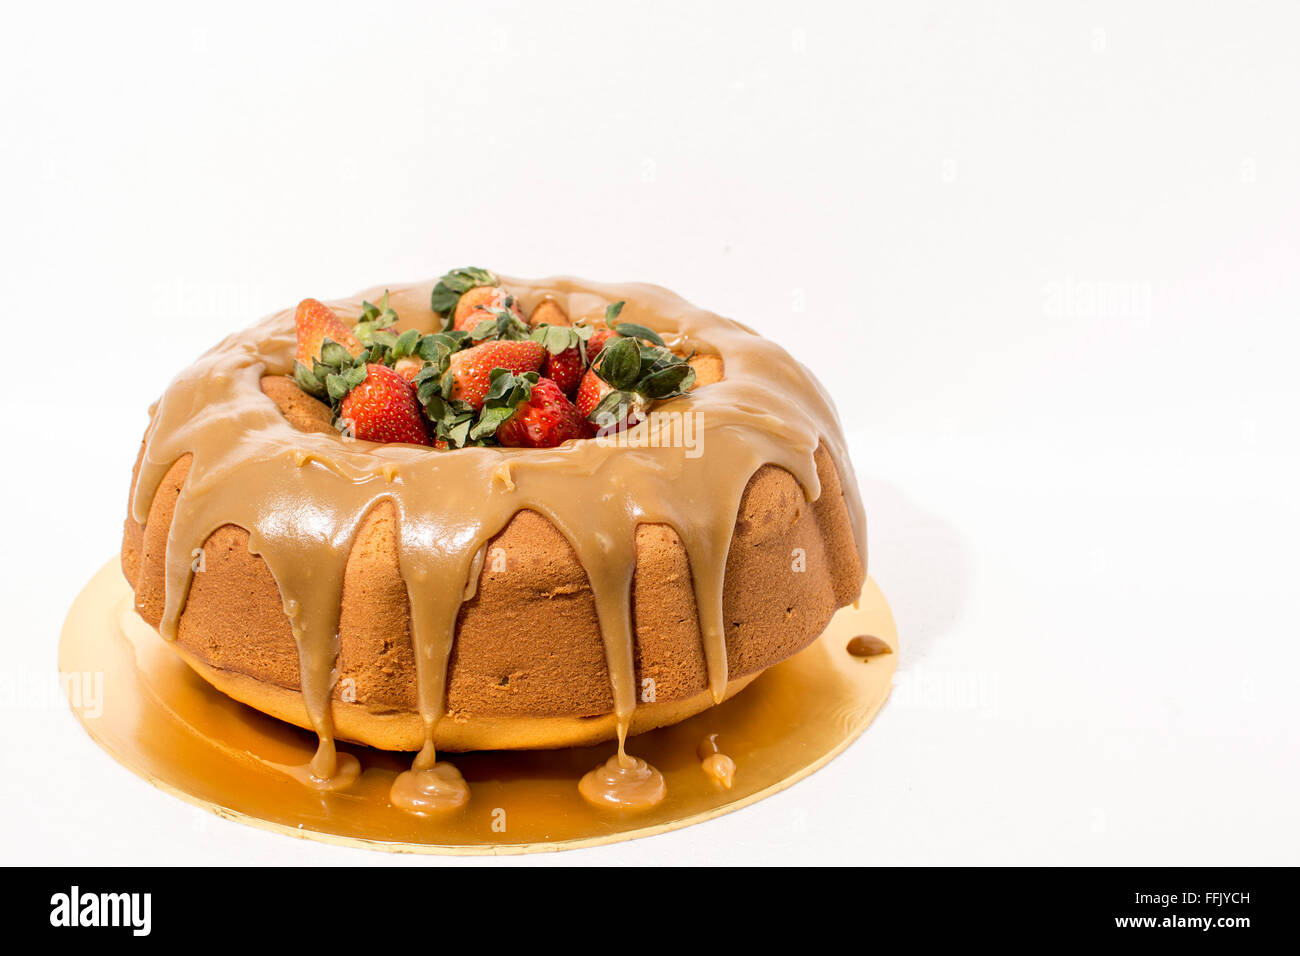 Toffee Bundt torta decorata con salsa al caramello e fragole Foto Stock